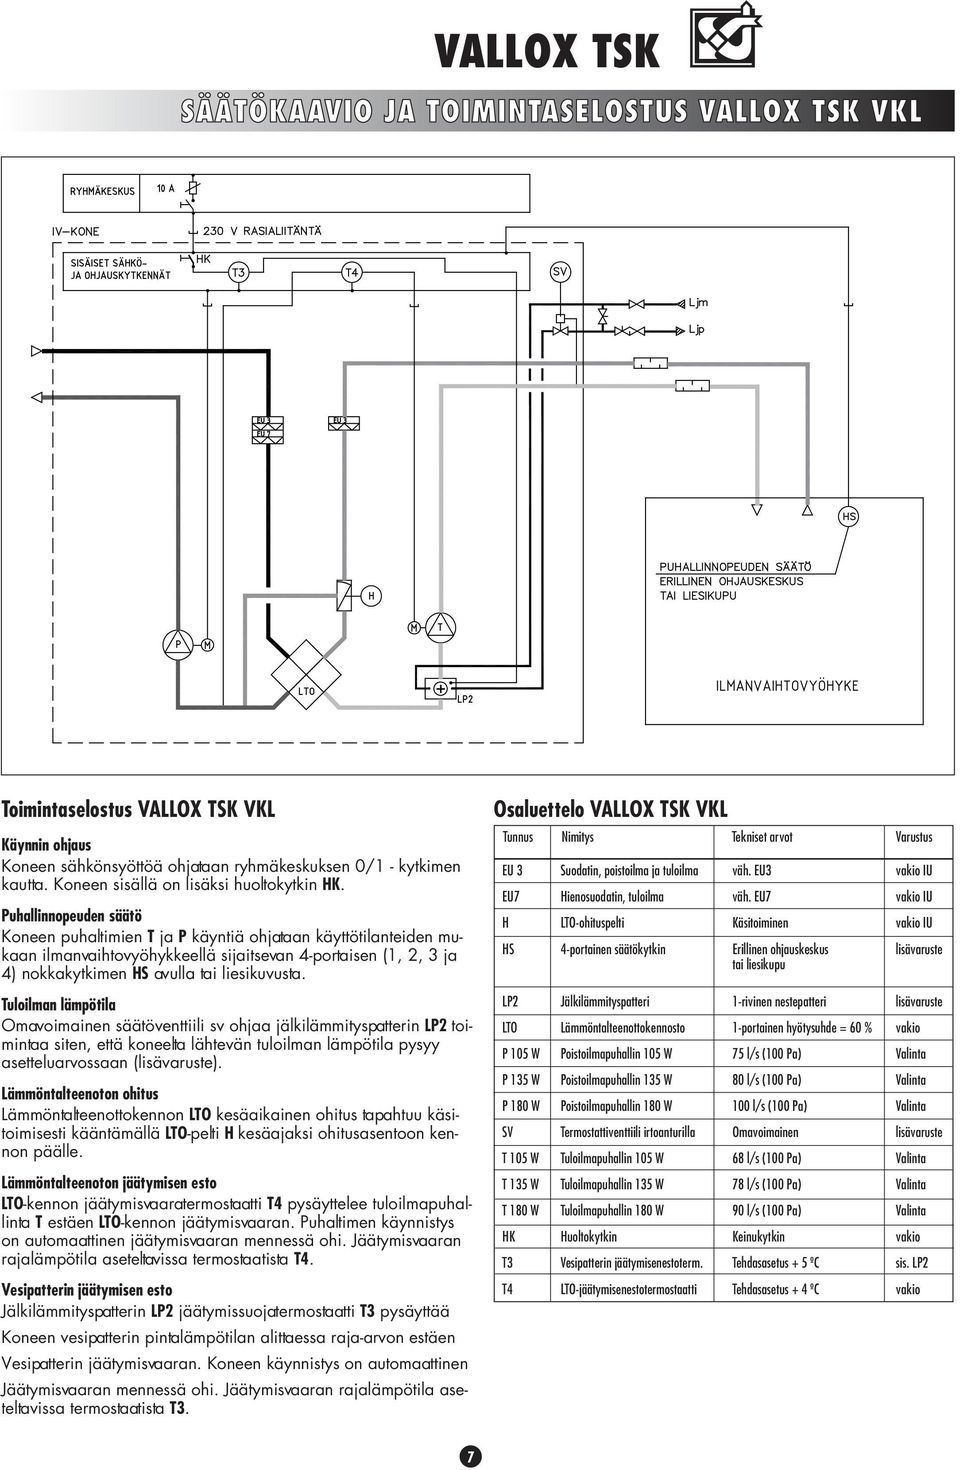 Puhallinnopeuden säätö Koneen puhaltimien T ja P käyntiä ohjataan käyttötilanteiden mukaan ilmanvaihtovyöhykkeellä sijaitsevan 4-portaisen (1, 2, 3 ja 4) nokkakytkimen HS avulla tai liesikuvusta.